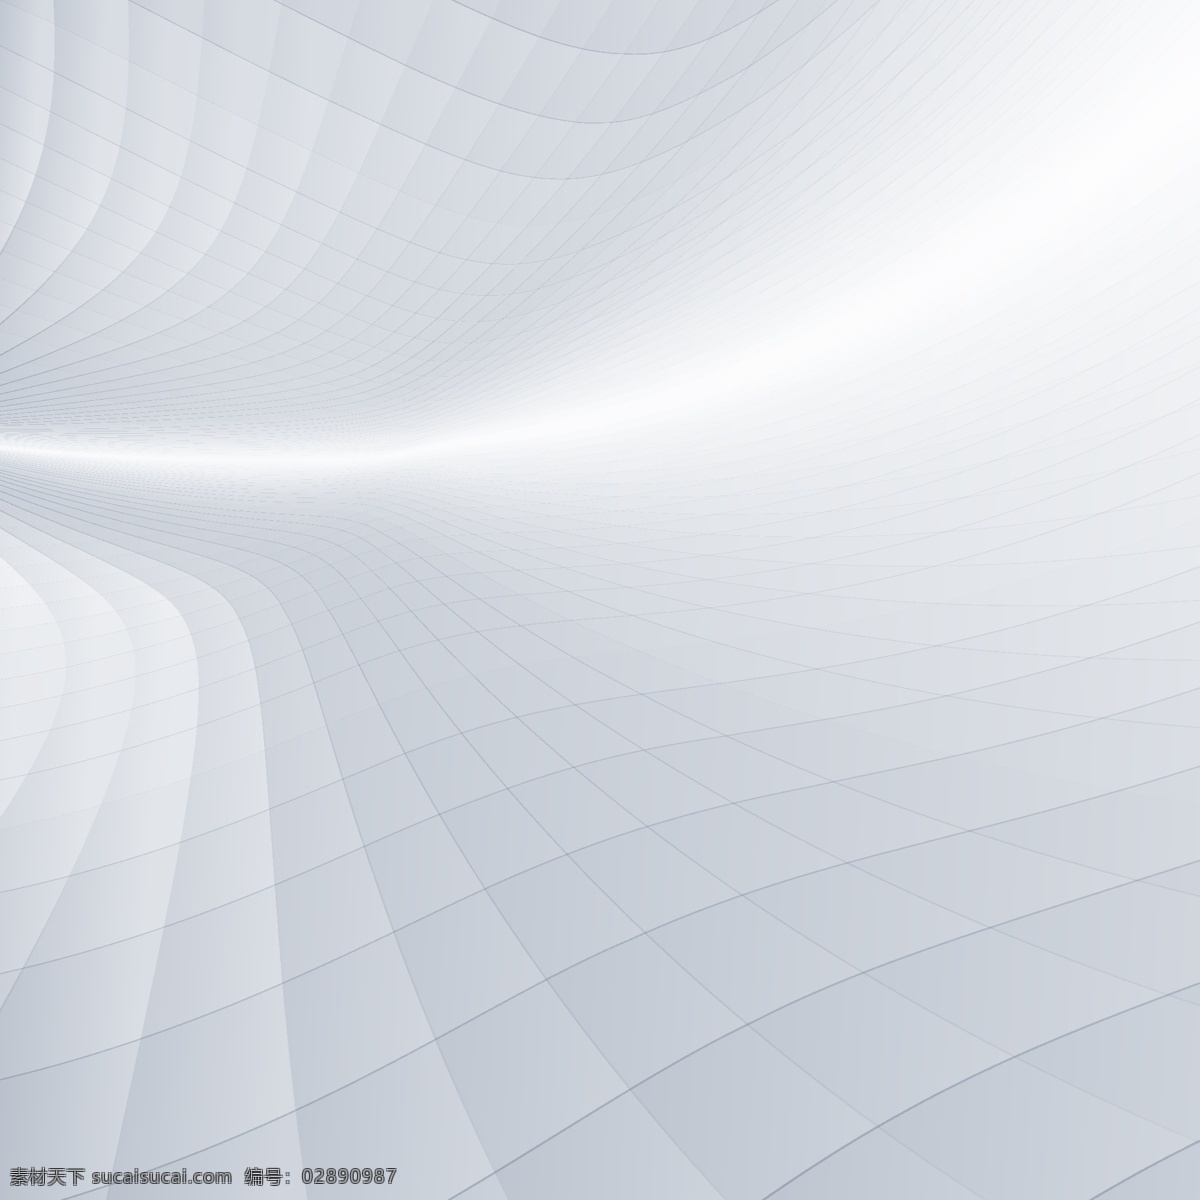 空间 立体几何 图形创意 3d 立体 背景 矢量 白色 灰色 科技 方格 商务 企业 广告背景 ppt背景 矢量设计